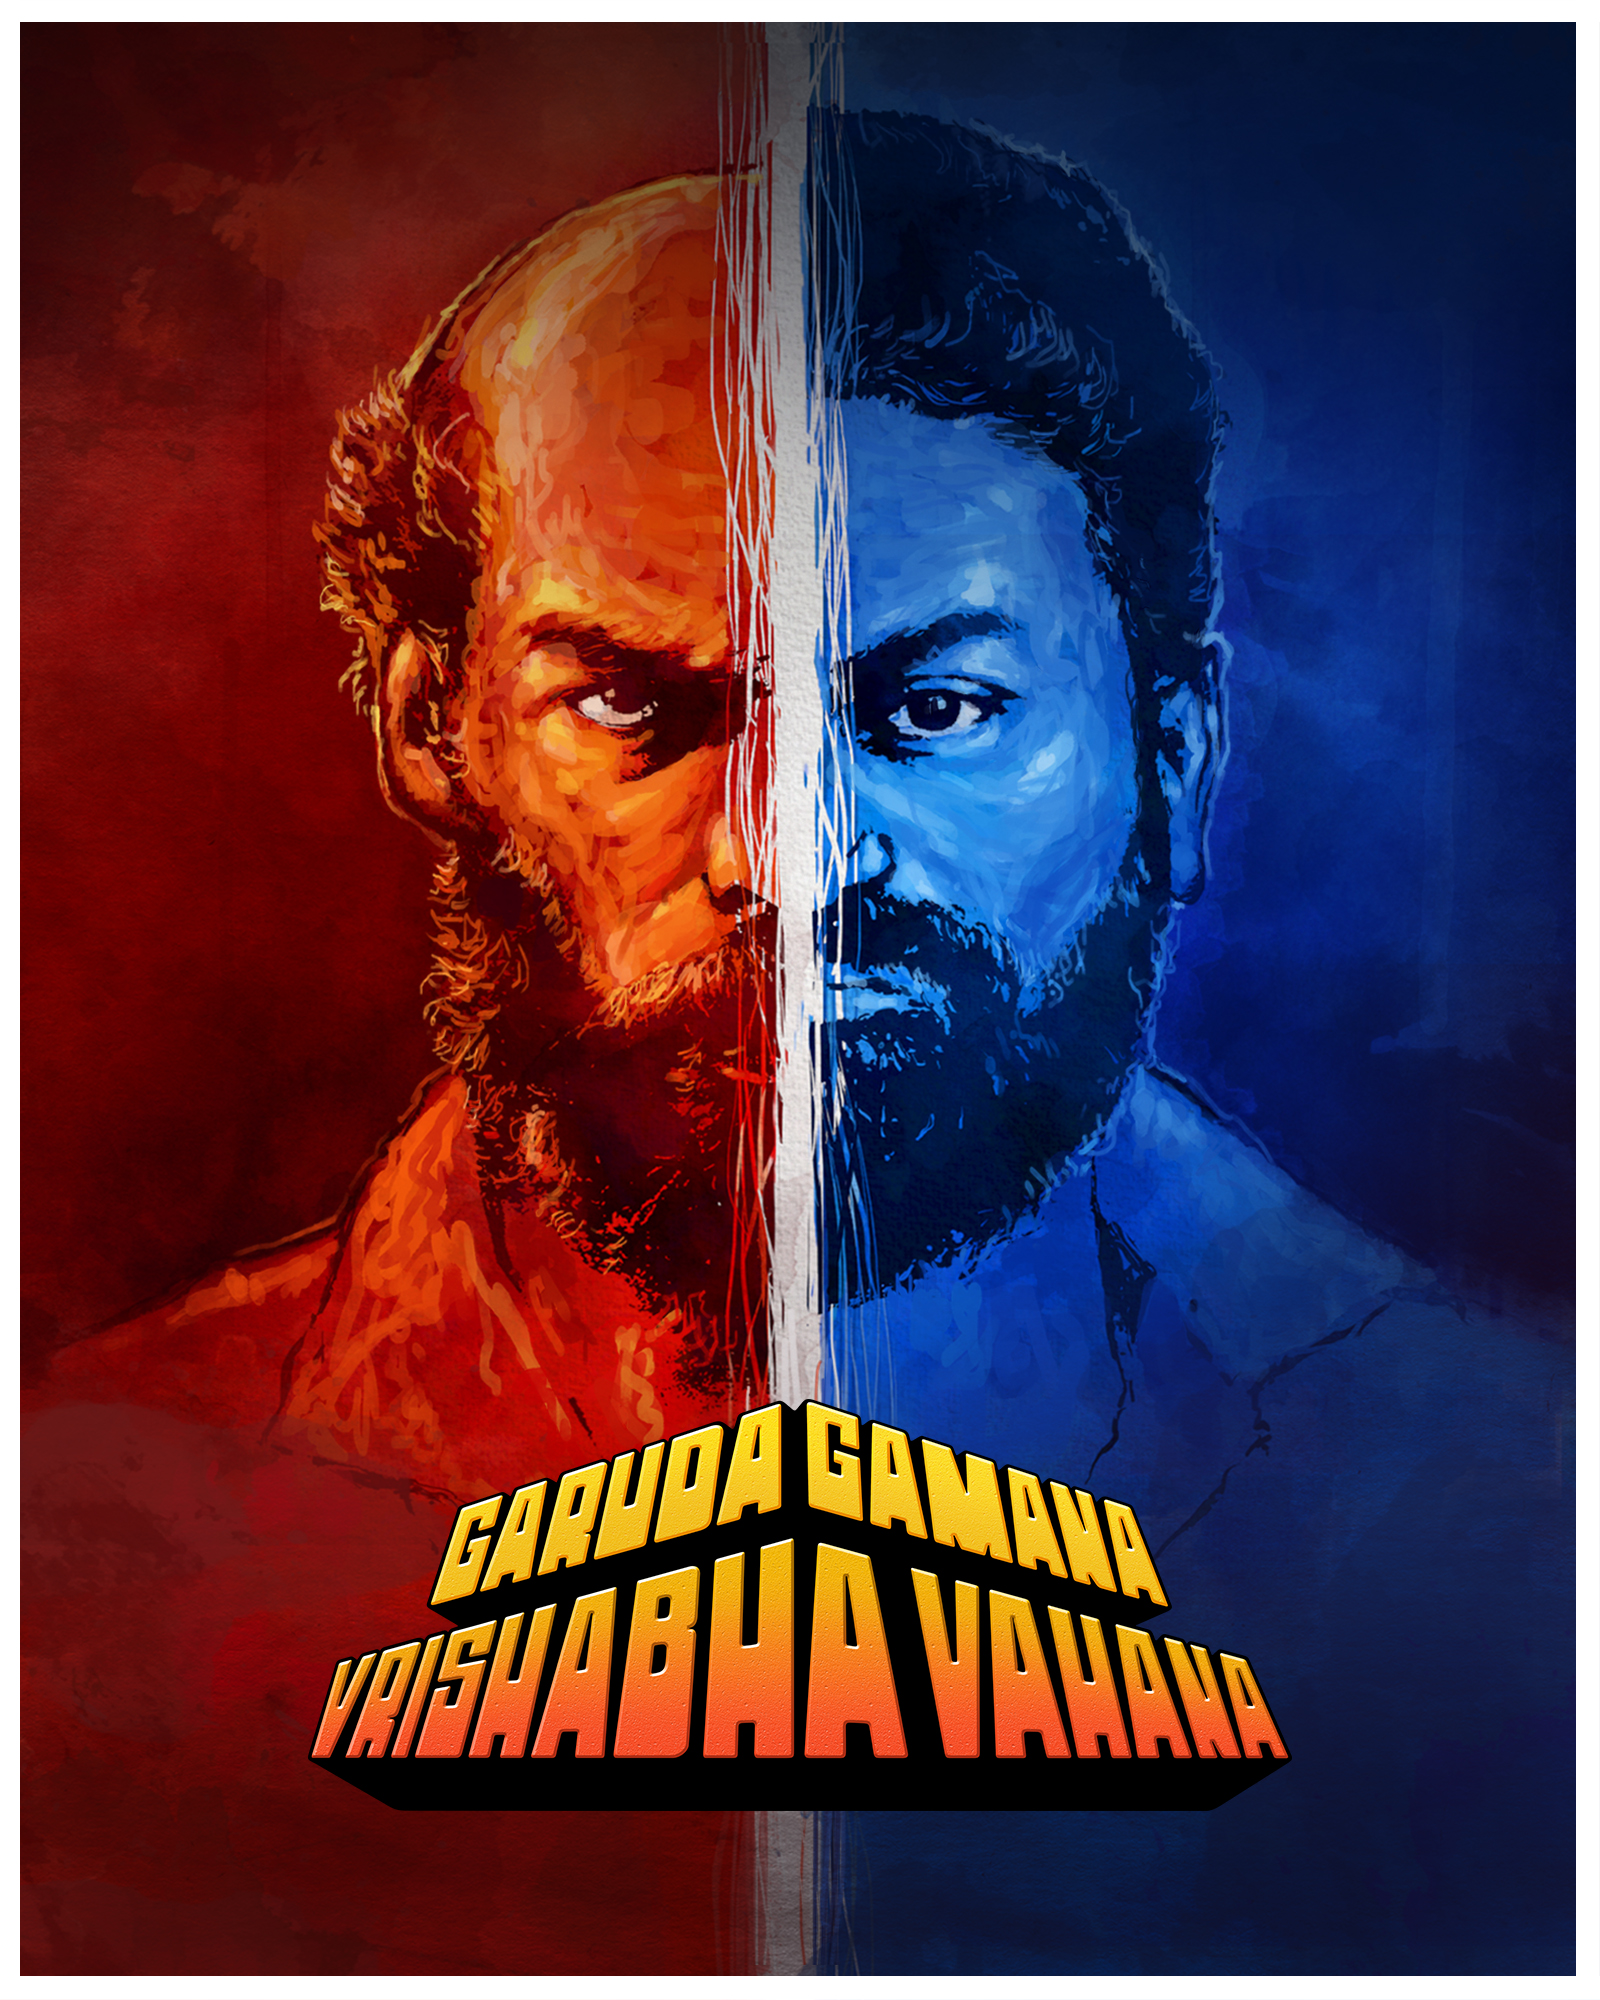 Garuda Gamana Vrishabha Vahana (2021) 720p HDRip Full Kannada Movie ESubs [1.3GB]